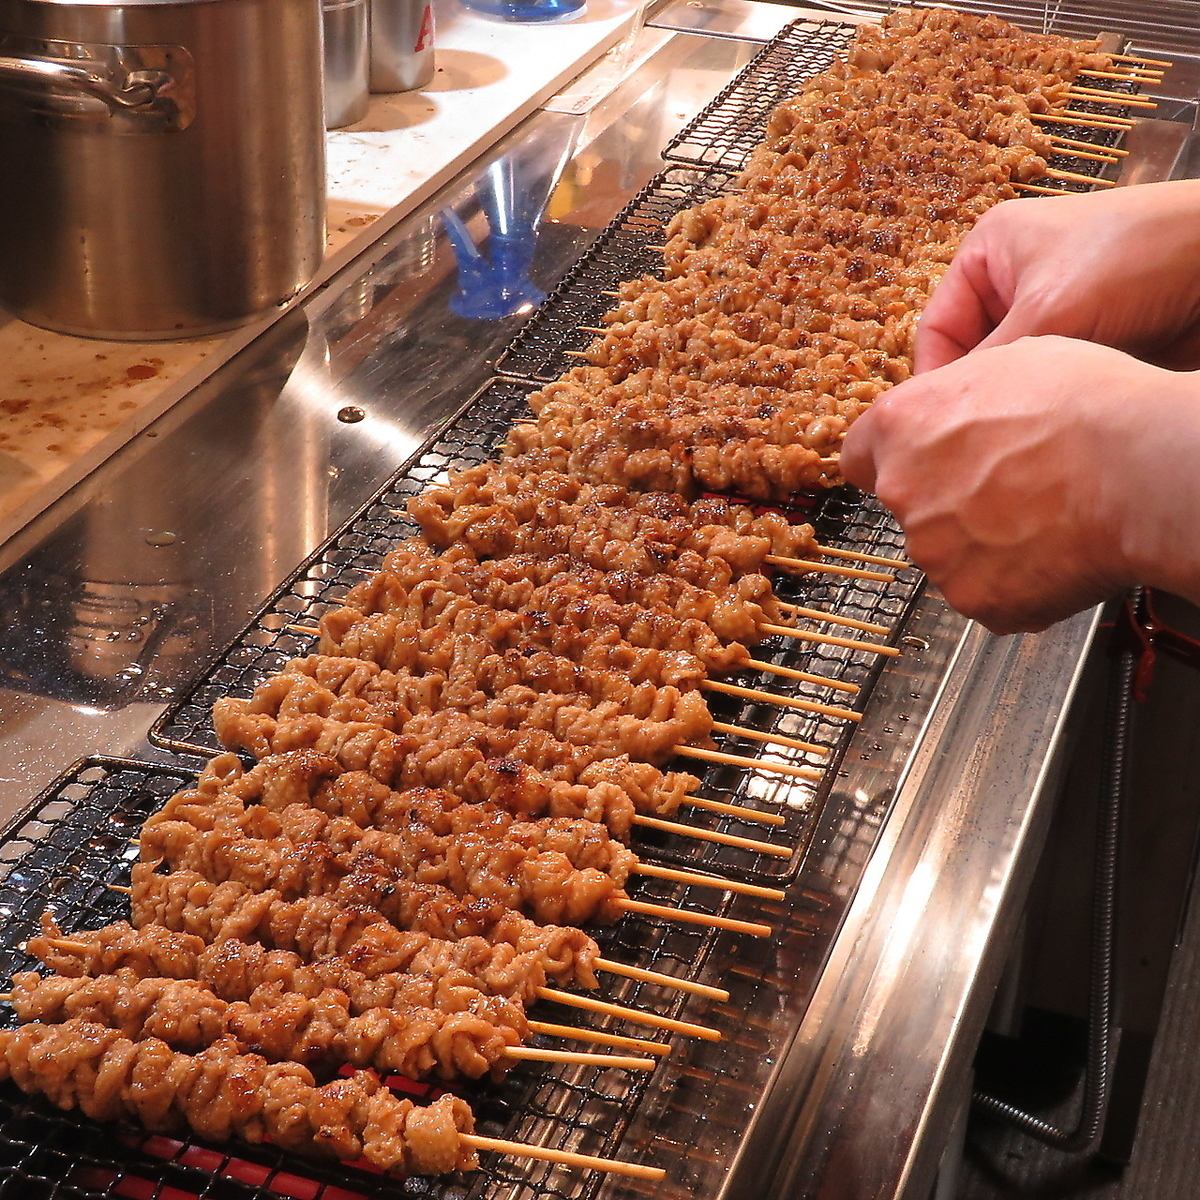 可以品尝到精通烤鸡肉串的店主精心烤制的美味烤鸡肉串。